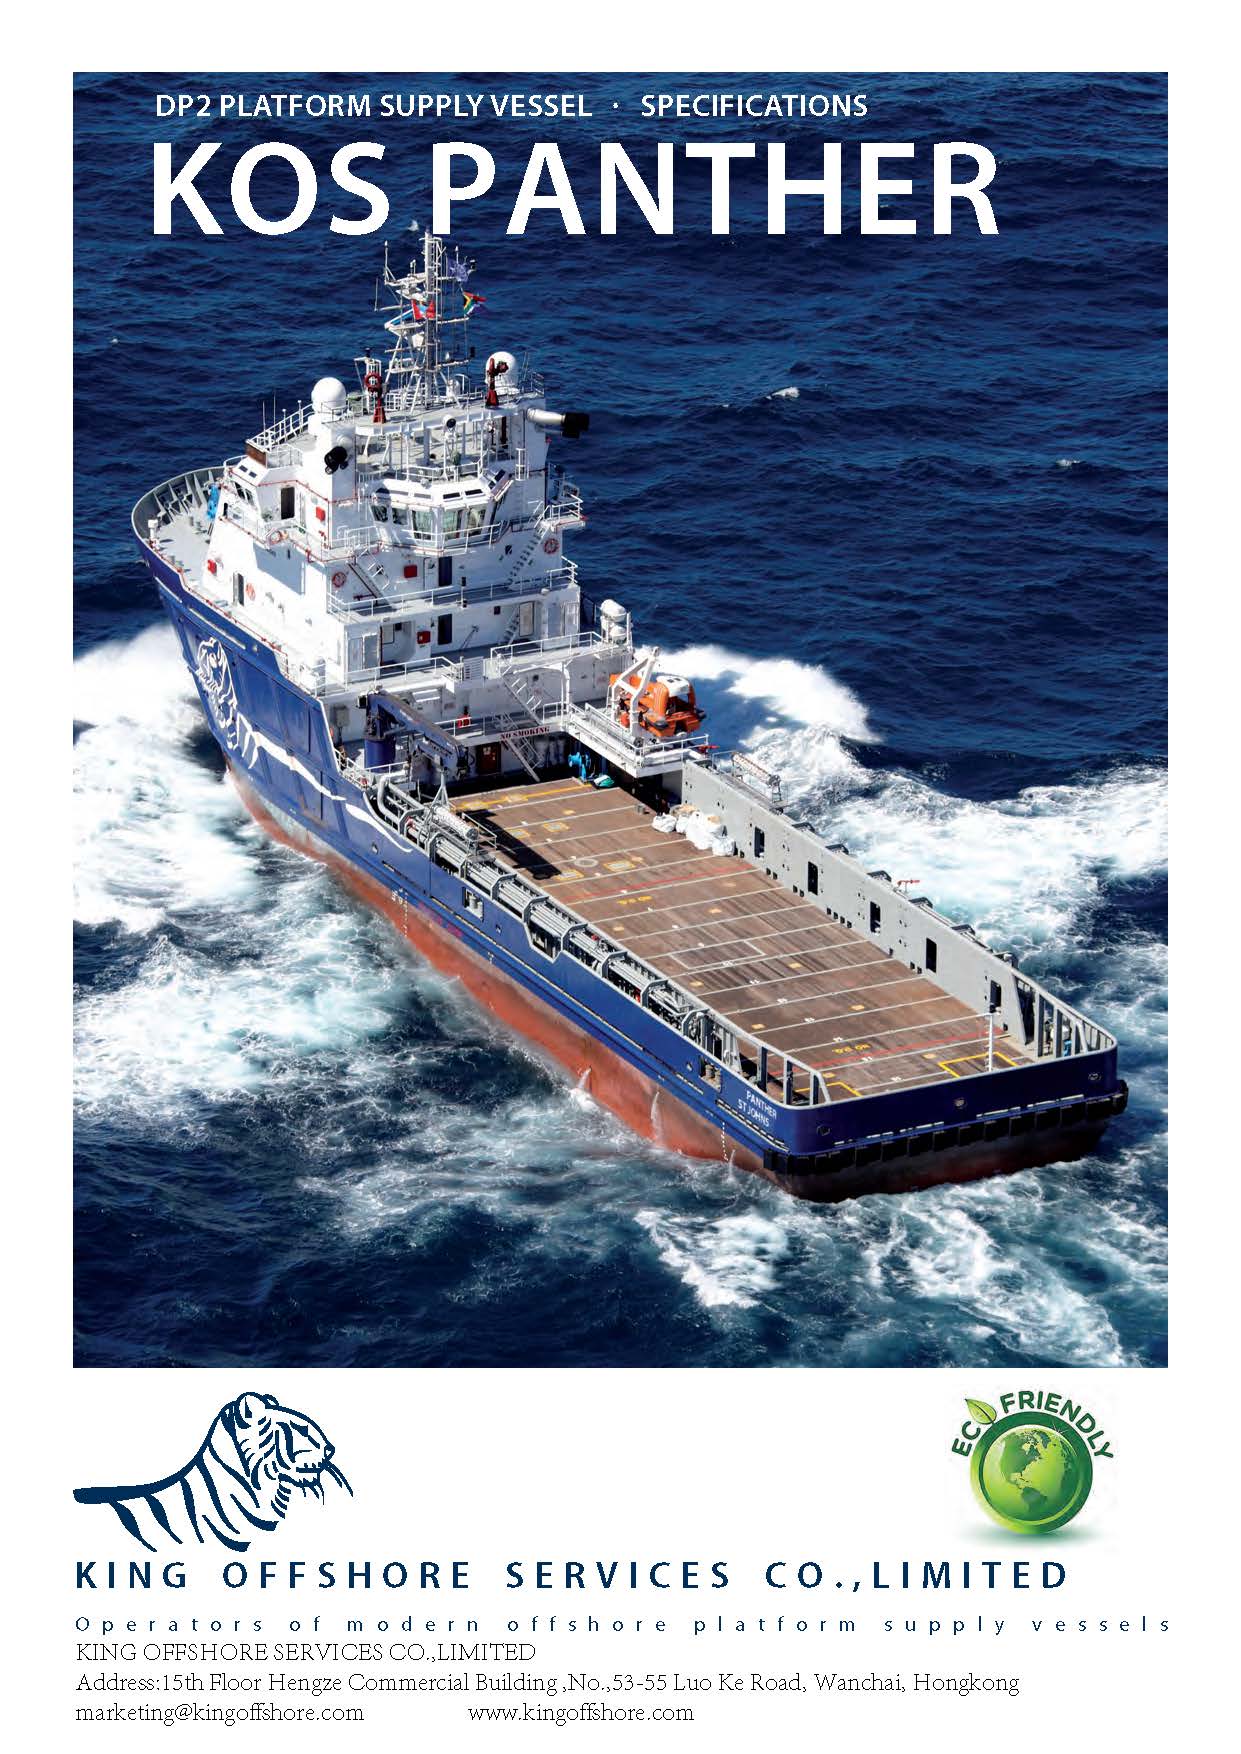 出租平台供应船（PSV）（DP2，甲板面积667m2,FIFI1） 地中海马耳他港口， US$13000